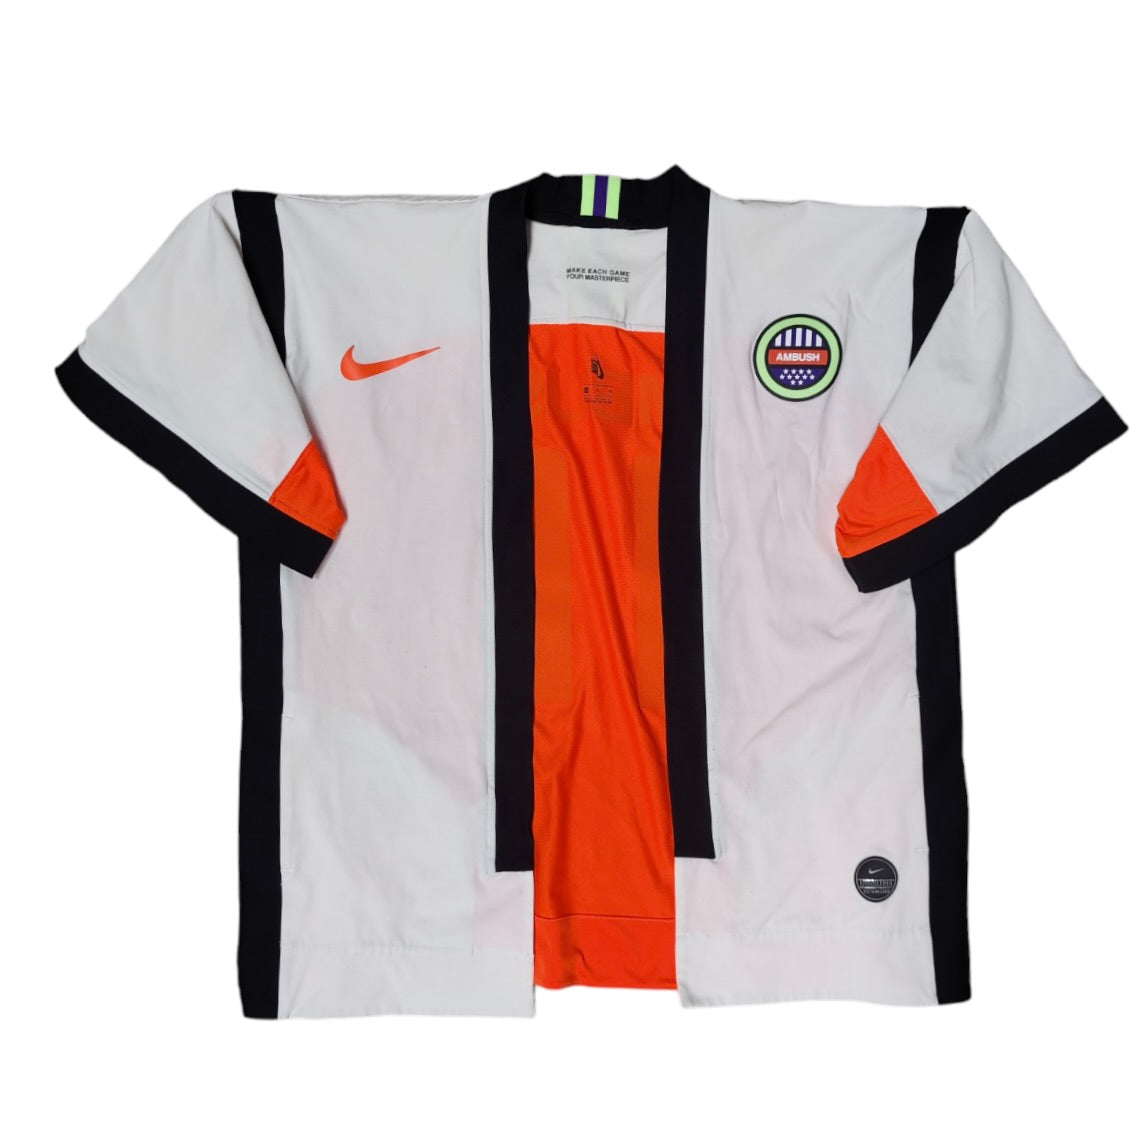 Nike x Ambush Numbering Top Sz S Kimono Jacket Robe